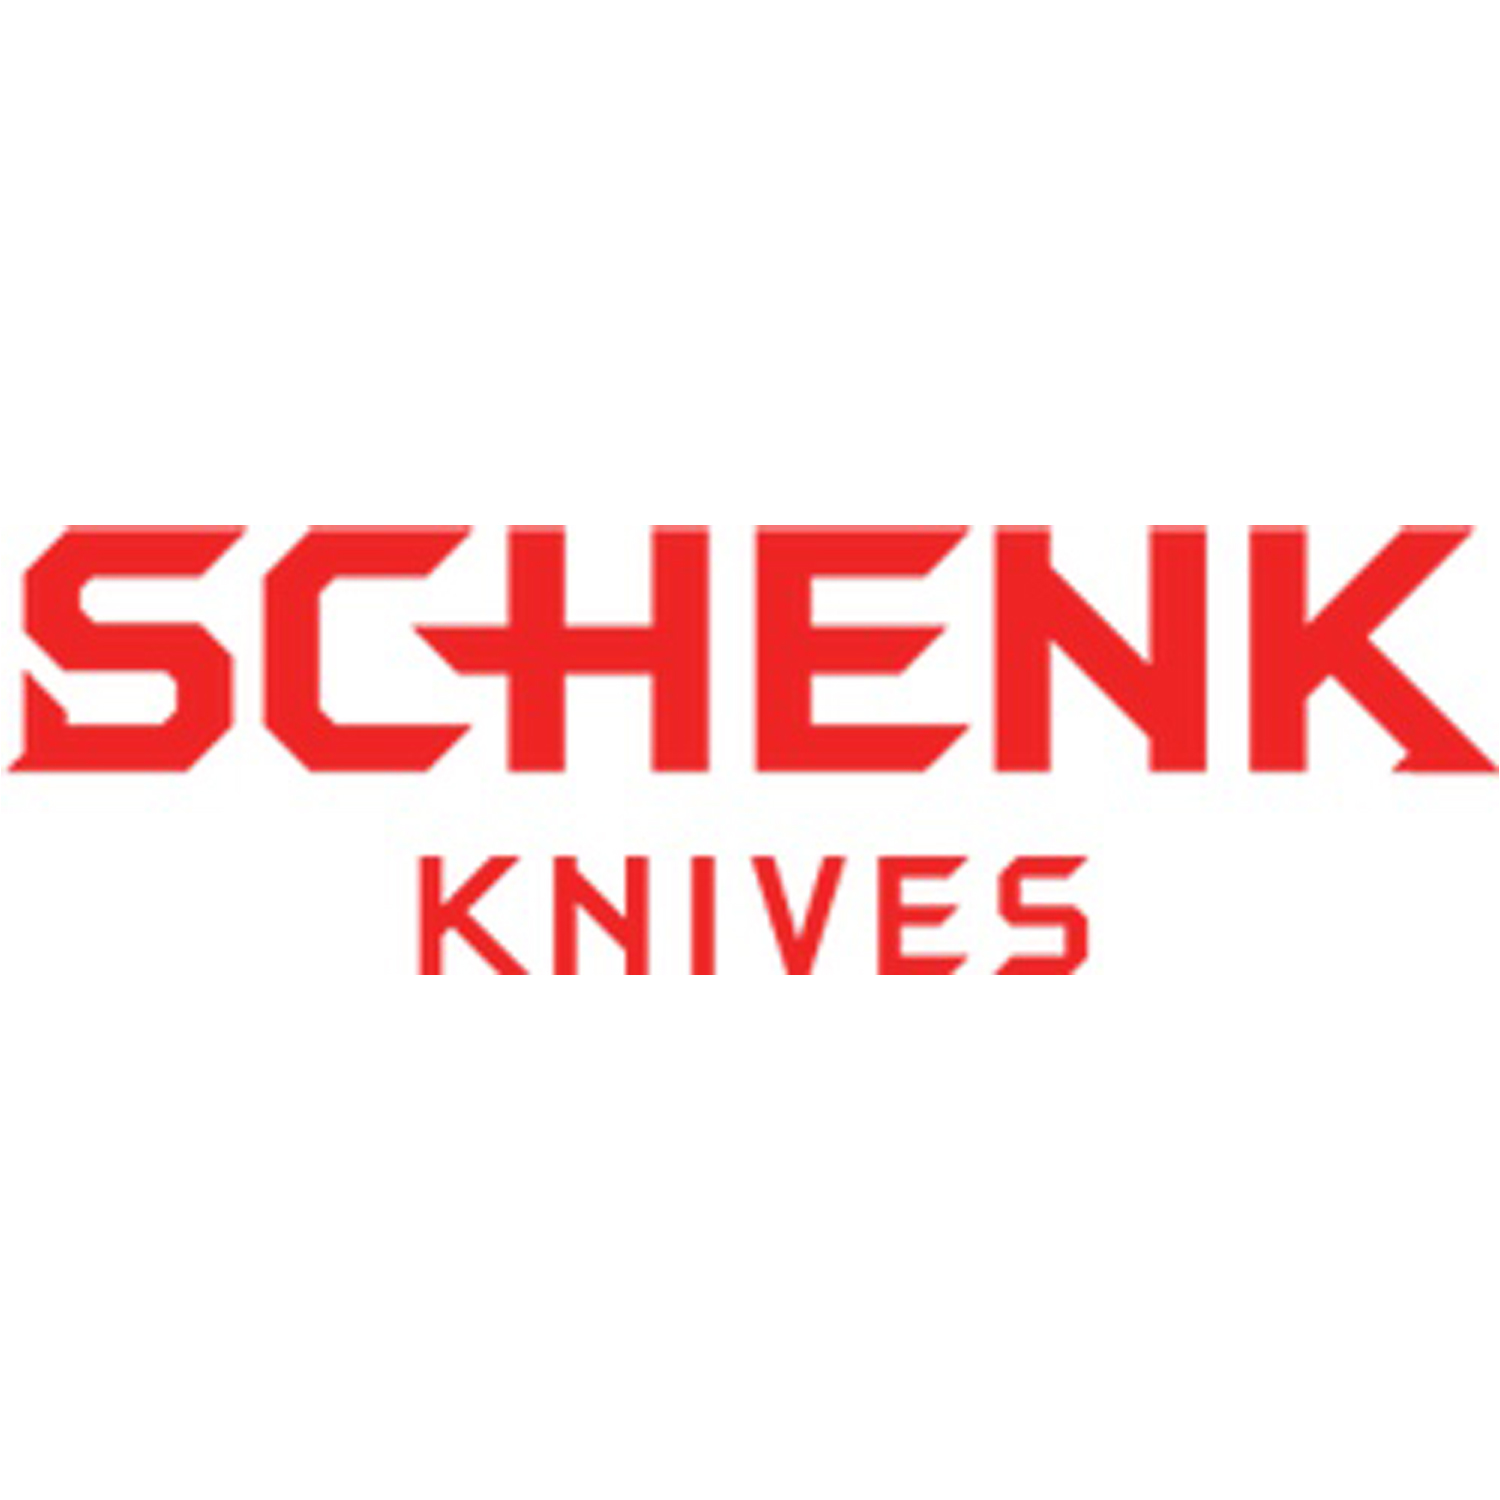 SCHENK KNIVES